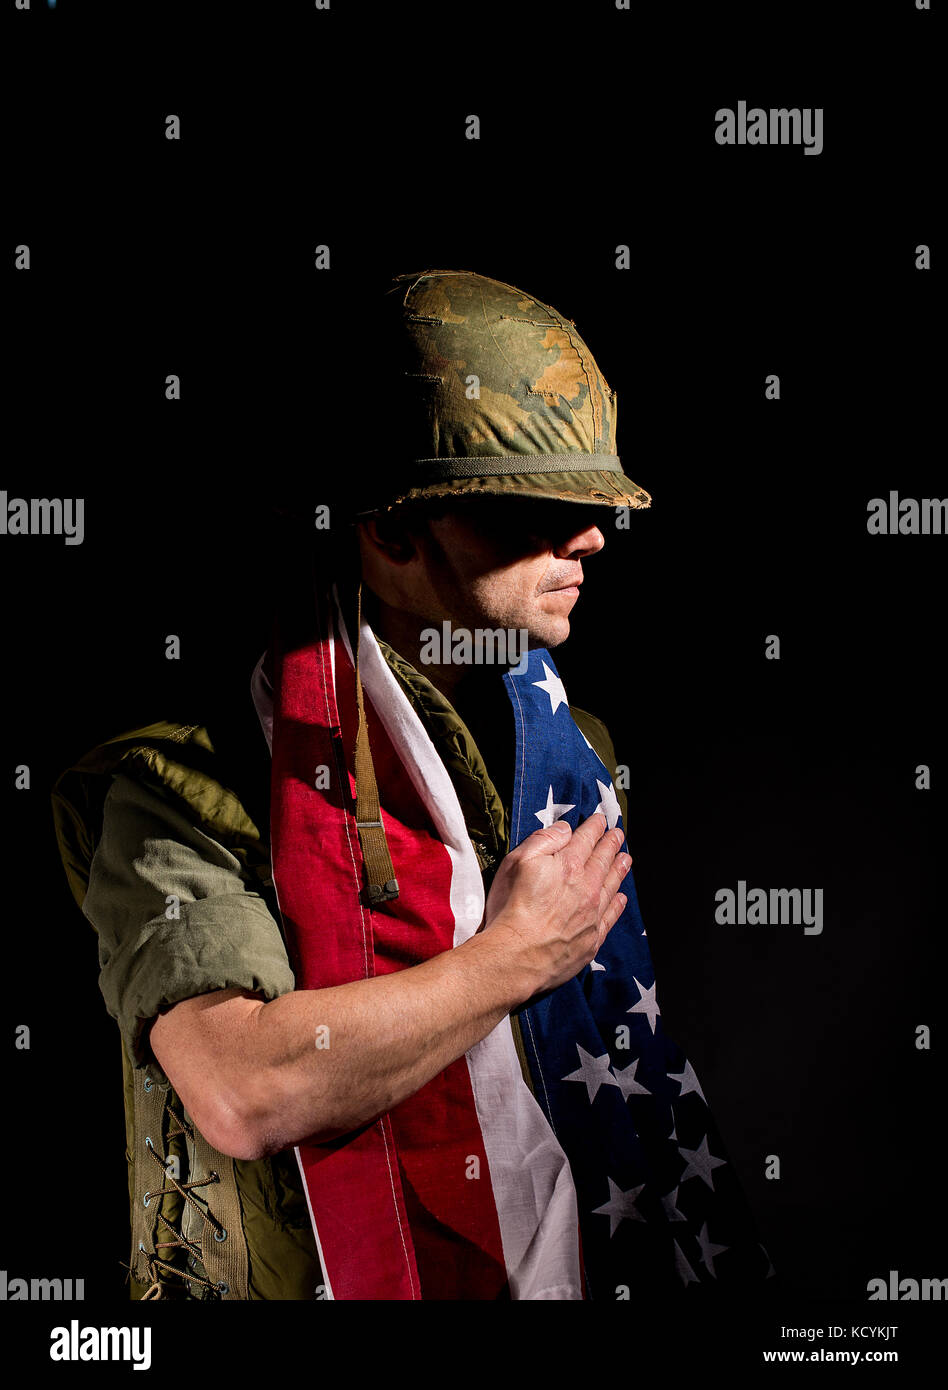 Patriotischer amerikanischer Soldat (US Marine / Vietnam Krieg) mit der Stern- und Sripes-Flagge um seine Schultern, vor dunklem Hintergrund. Stockfoto